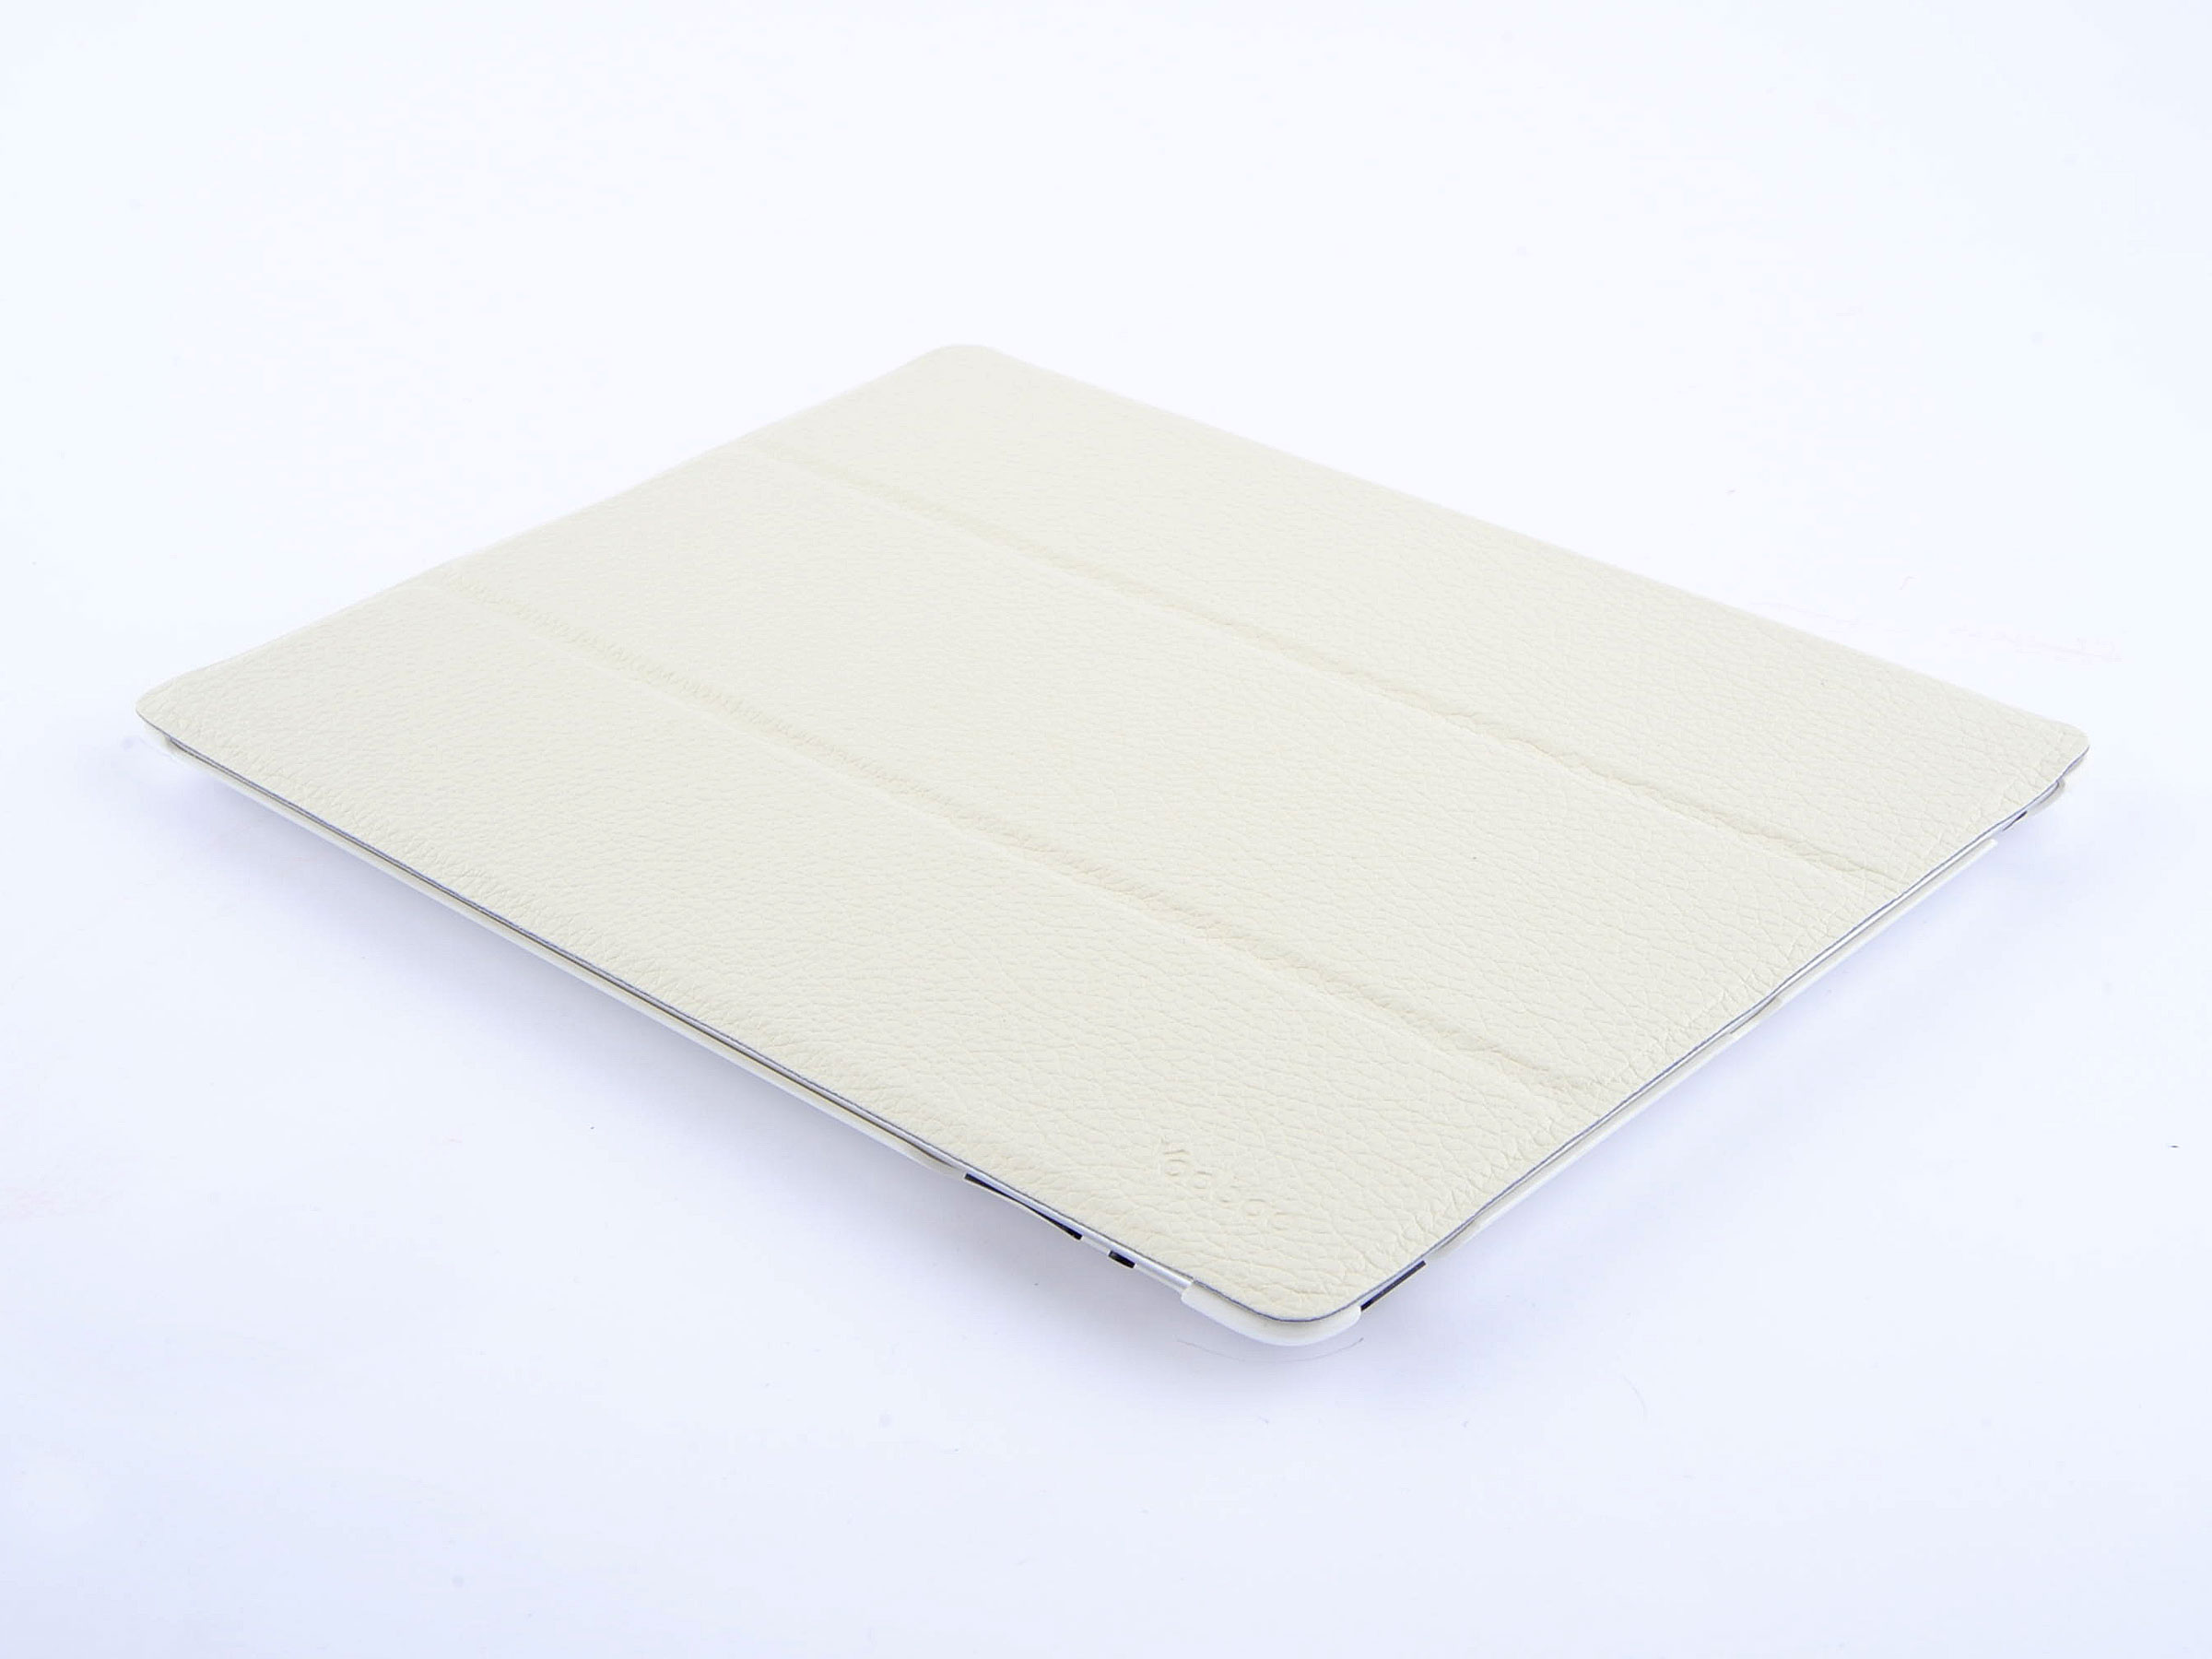 iSlim iPad 3/4 case. White